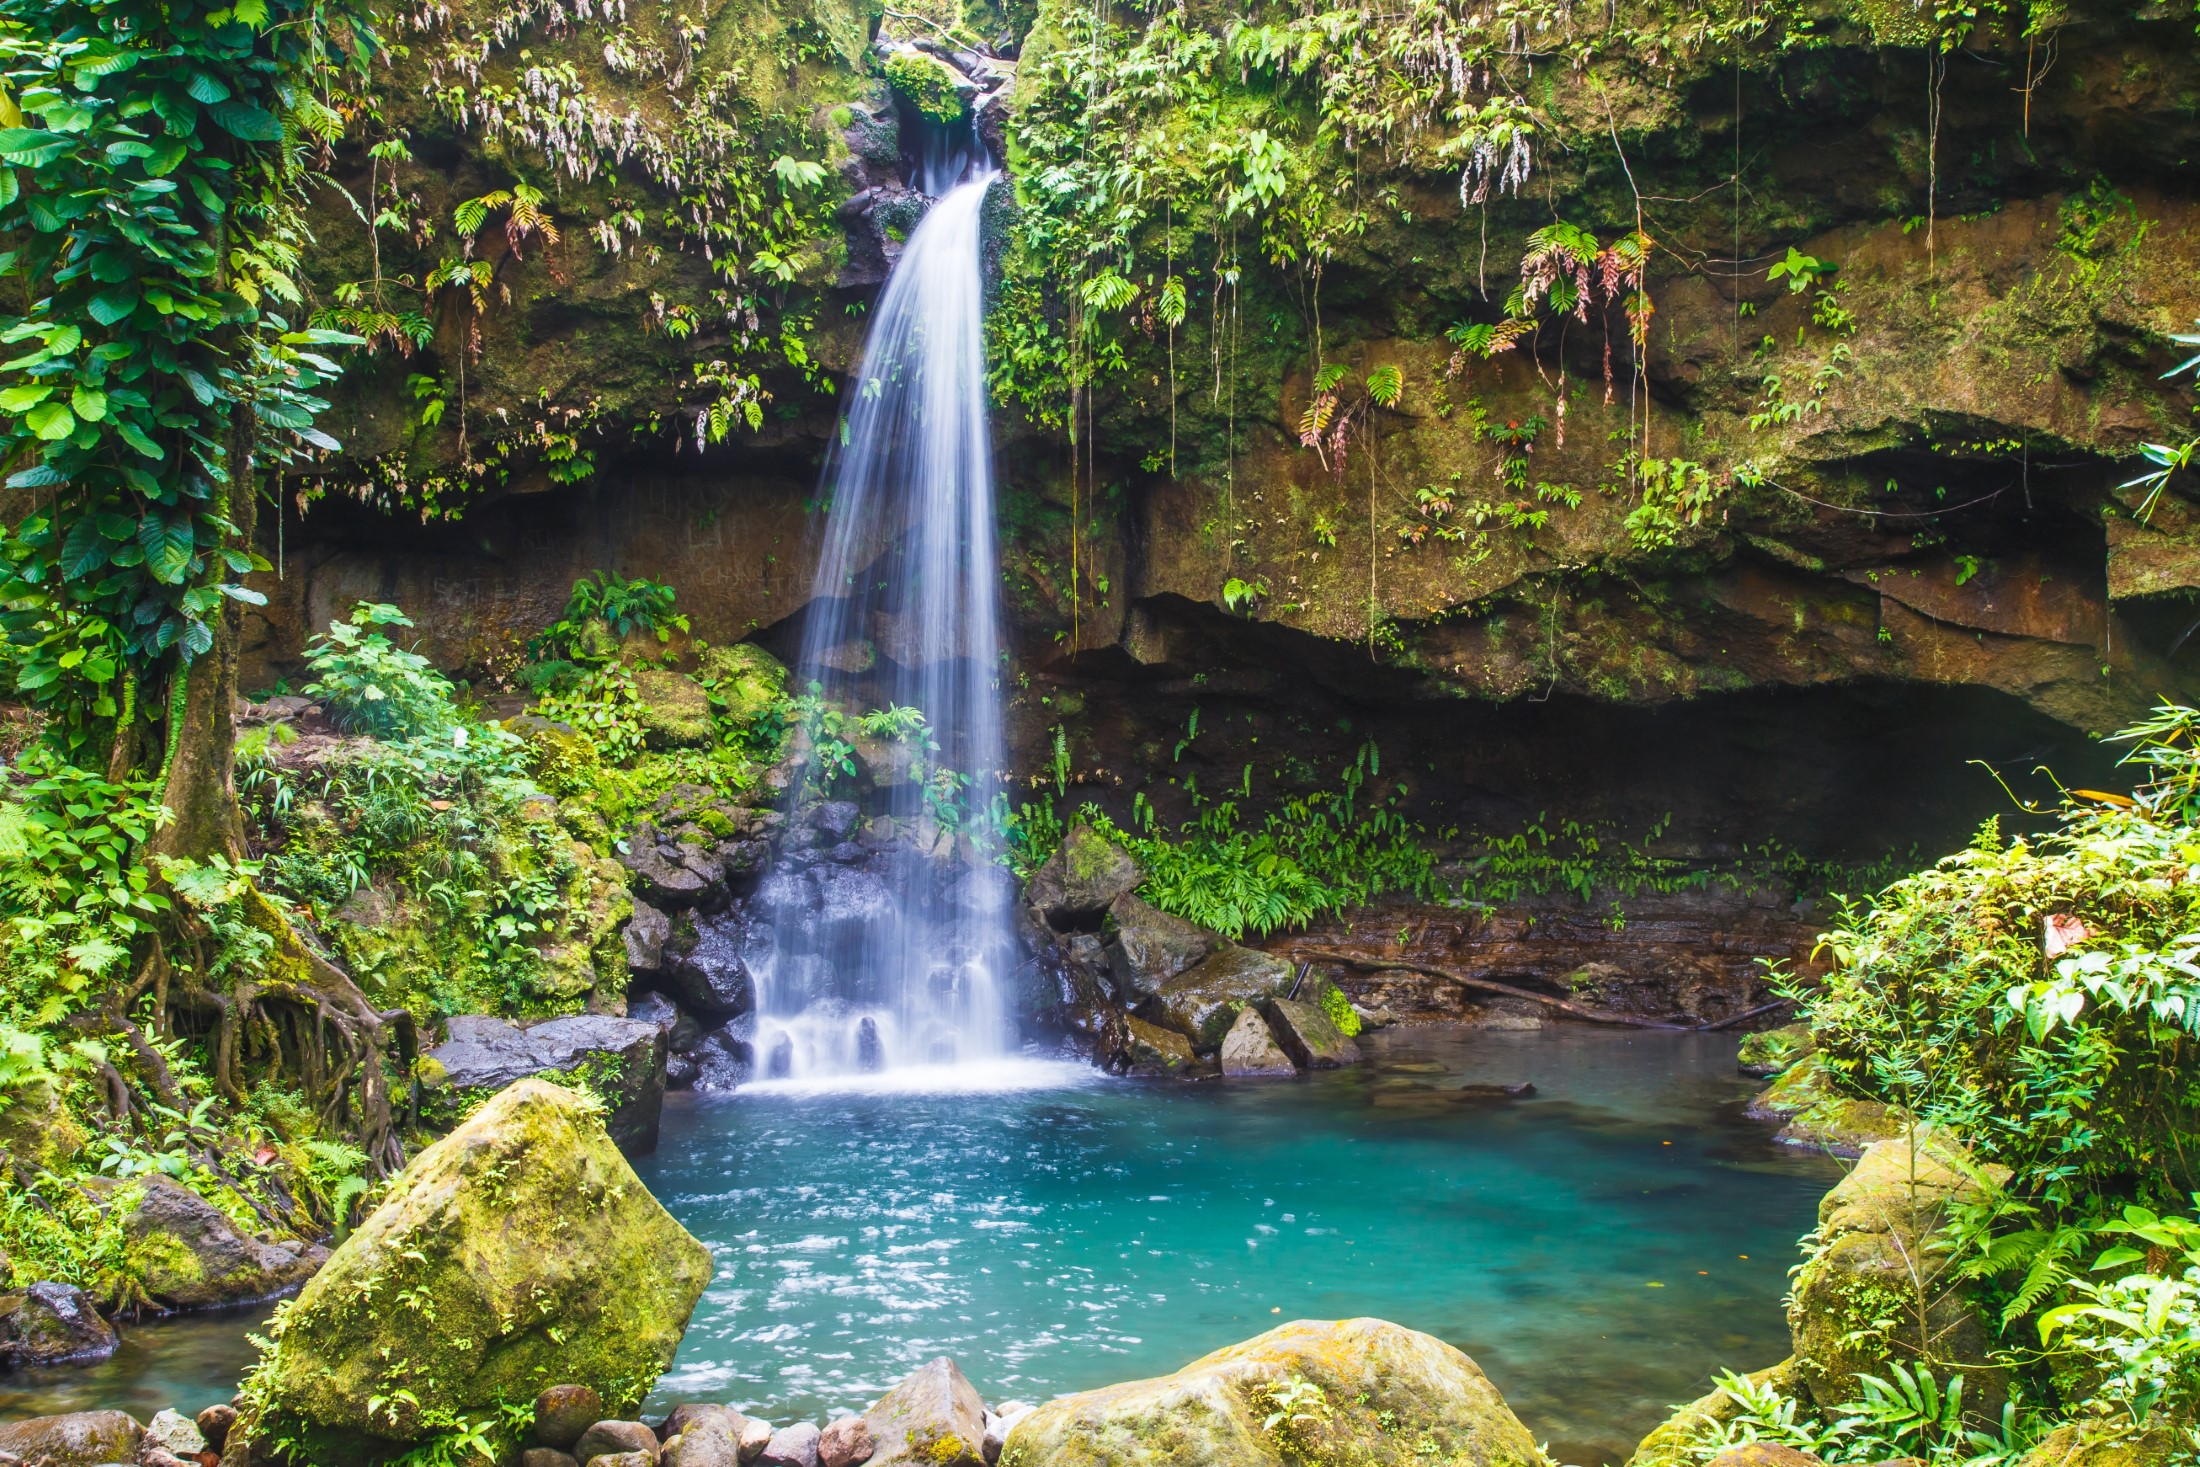 Szmaragdowy basen w bujnym lesie deszczowym to piękny klejnot Dominiki na Karaibach